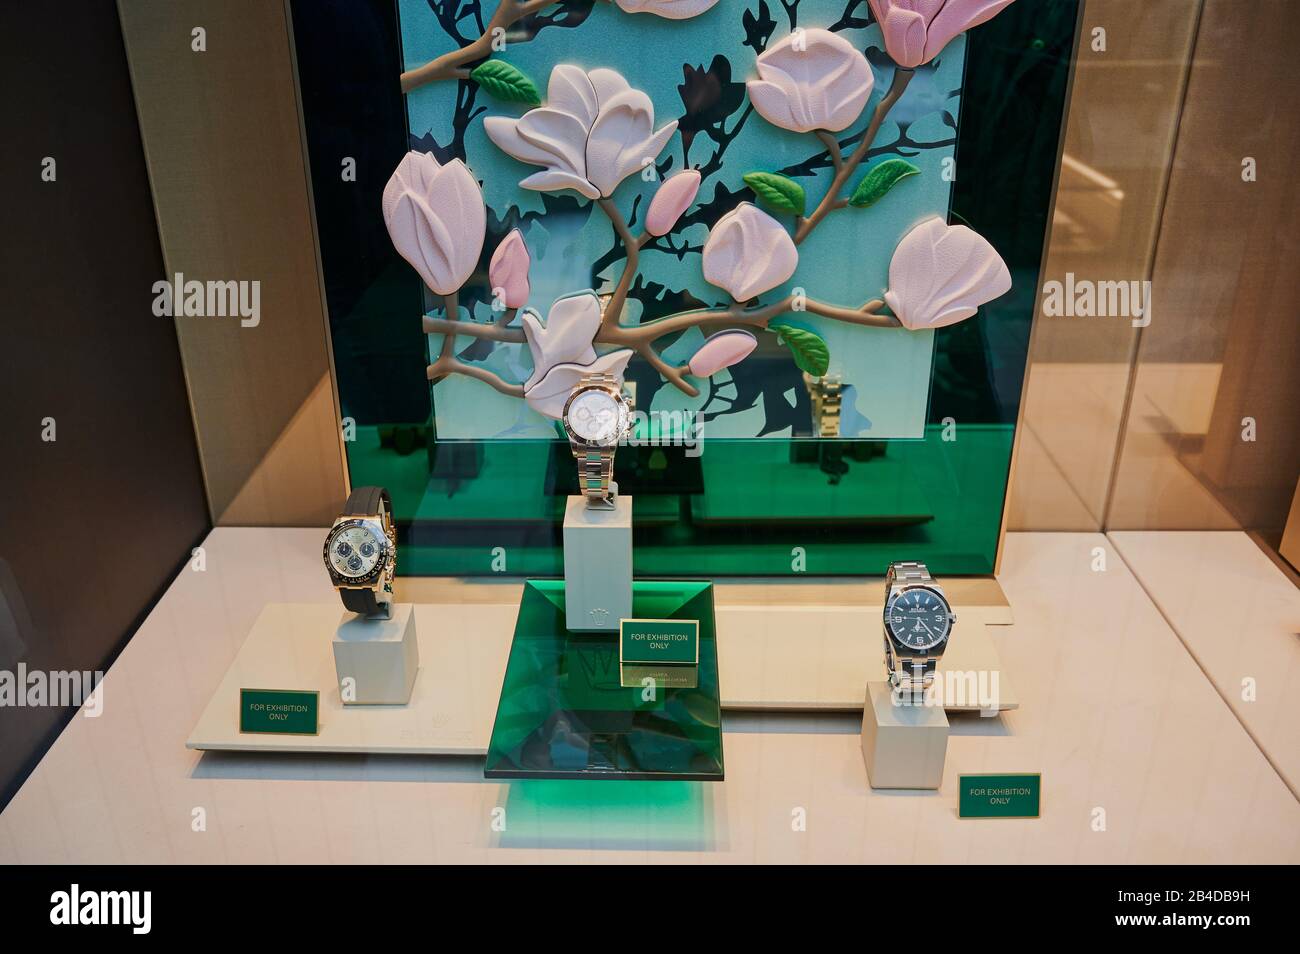 Viena, Austria - 19 de febrero de 2020: Rolex Store window en Viena. Rolex SA es un relojero suizo de lujo. Es la Marca de relojes de lujo más grande, prod Foto de stock